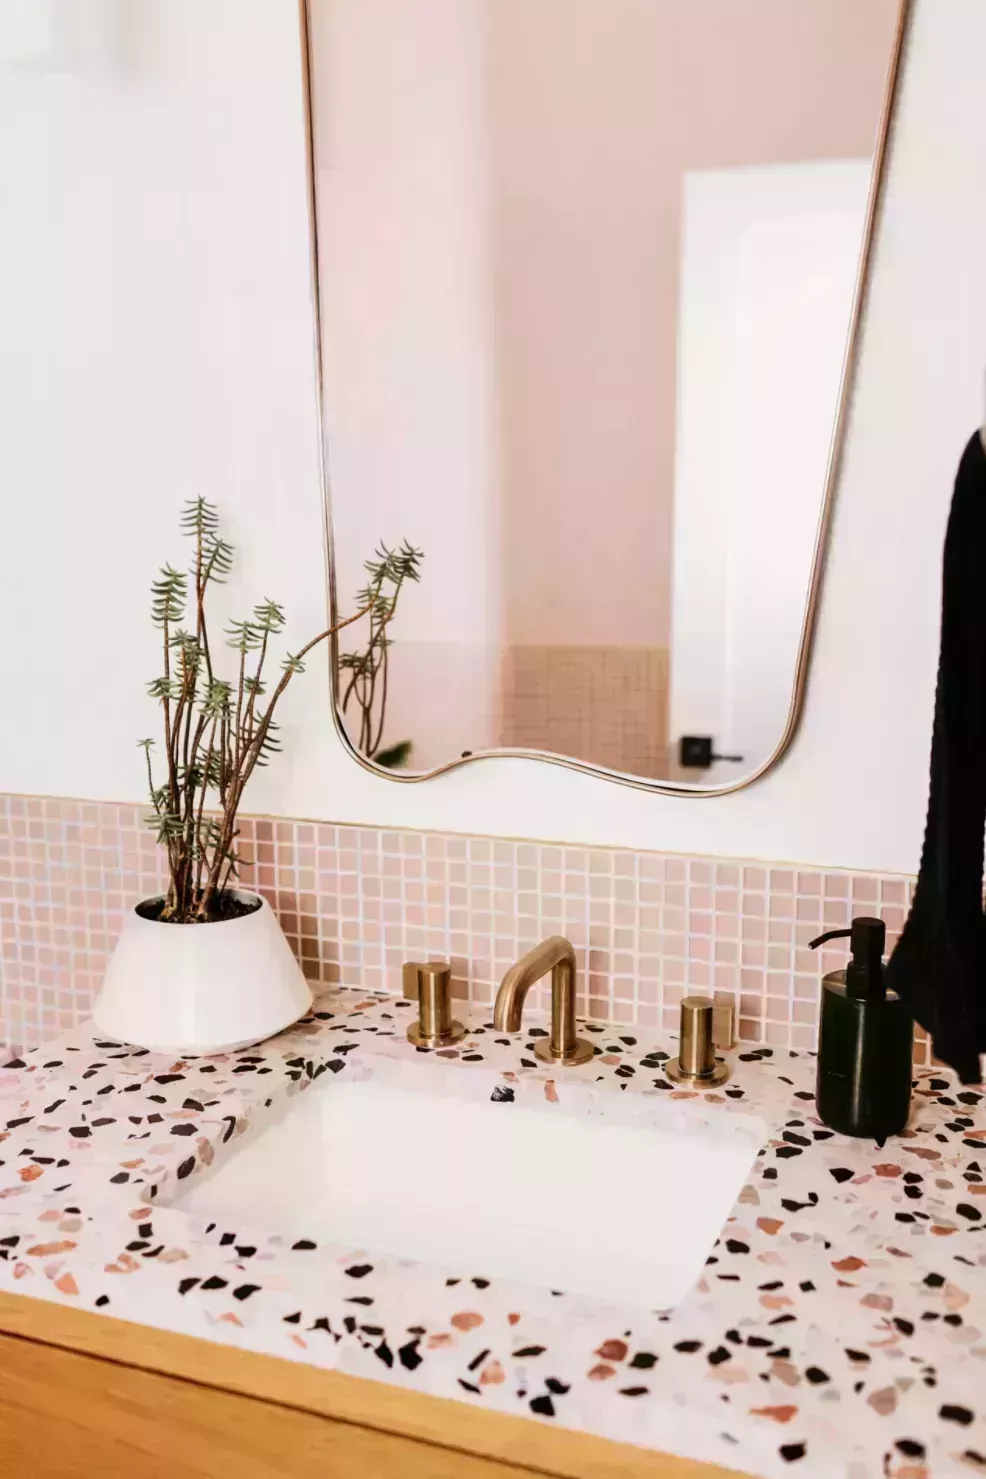  24 ideas para el baño de invitados que darán una cálida bienvenida a tus visitantes 